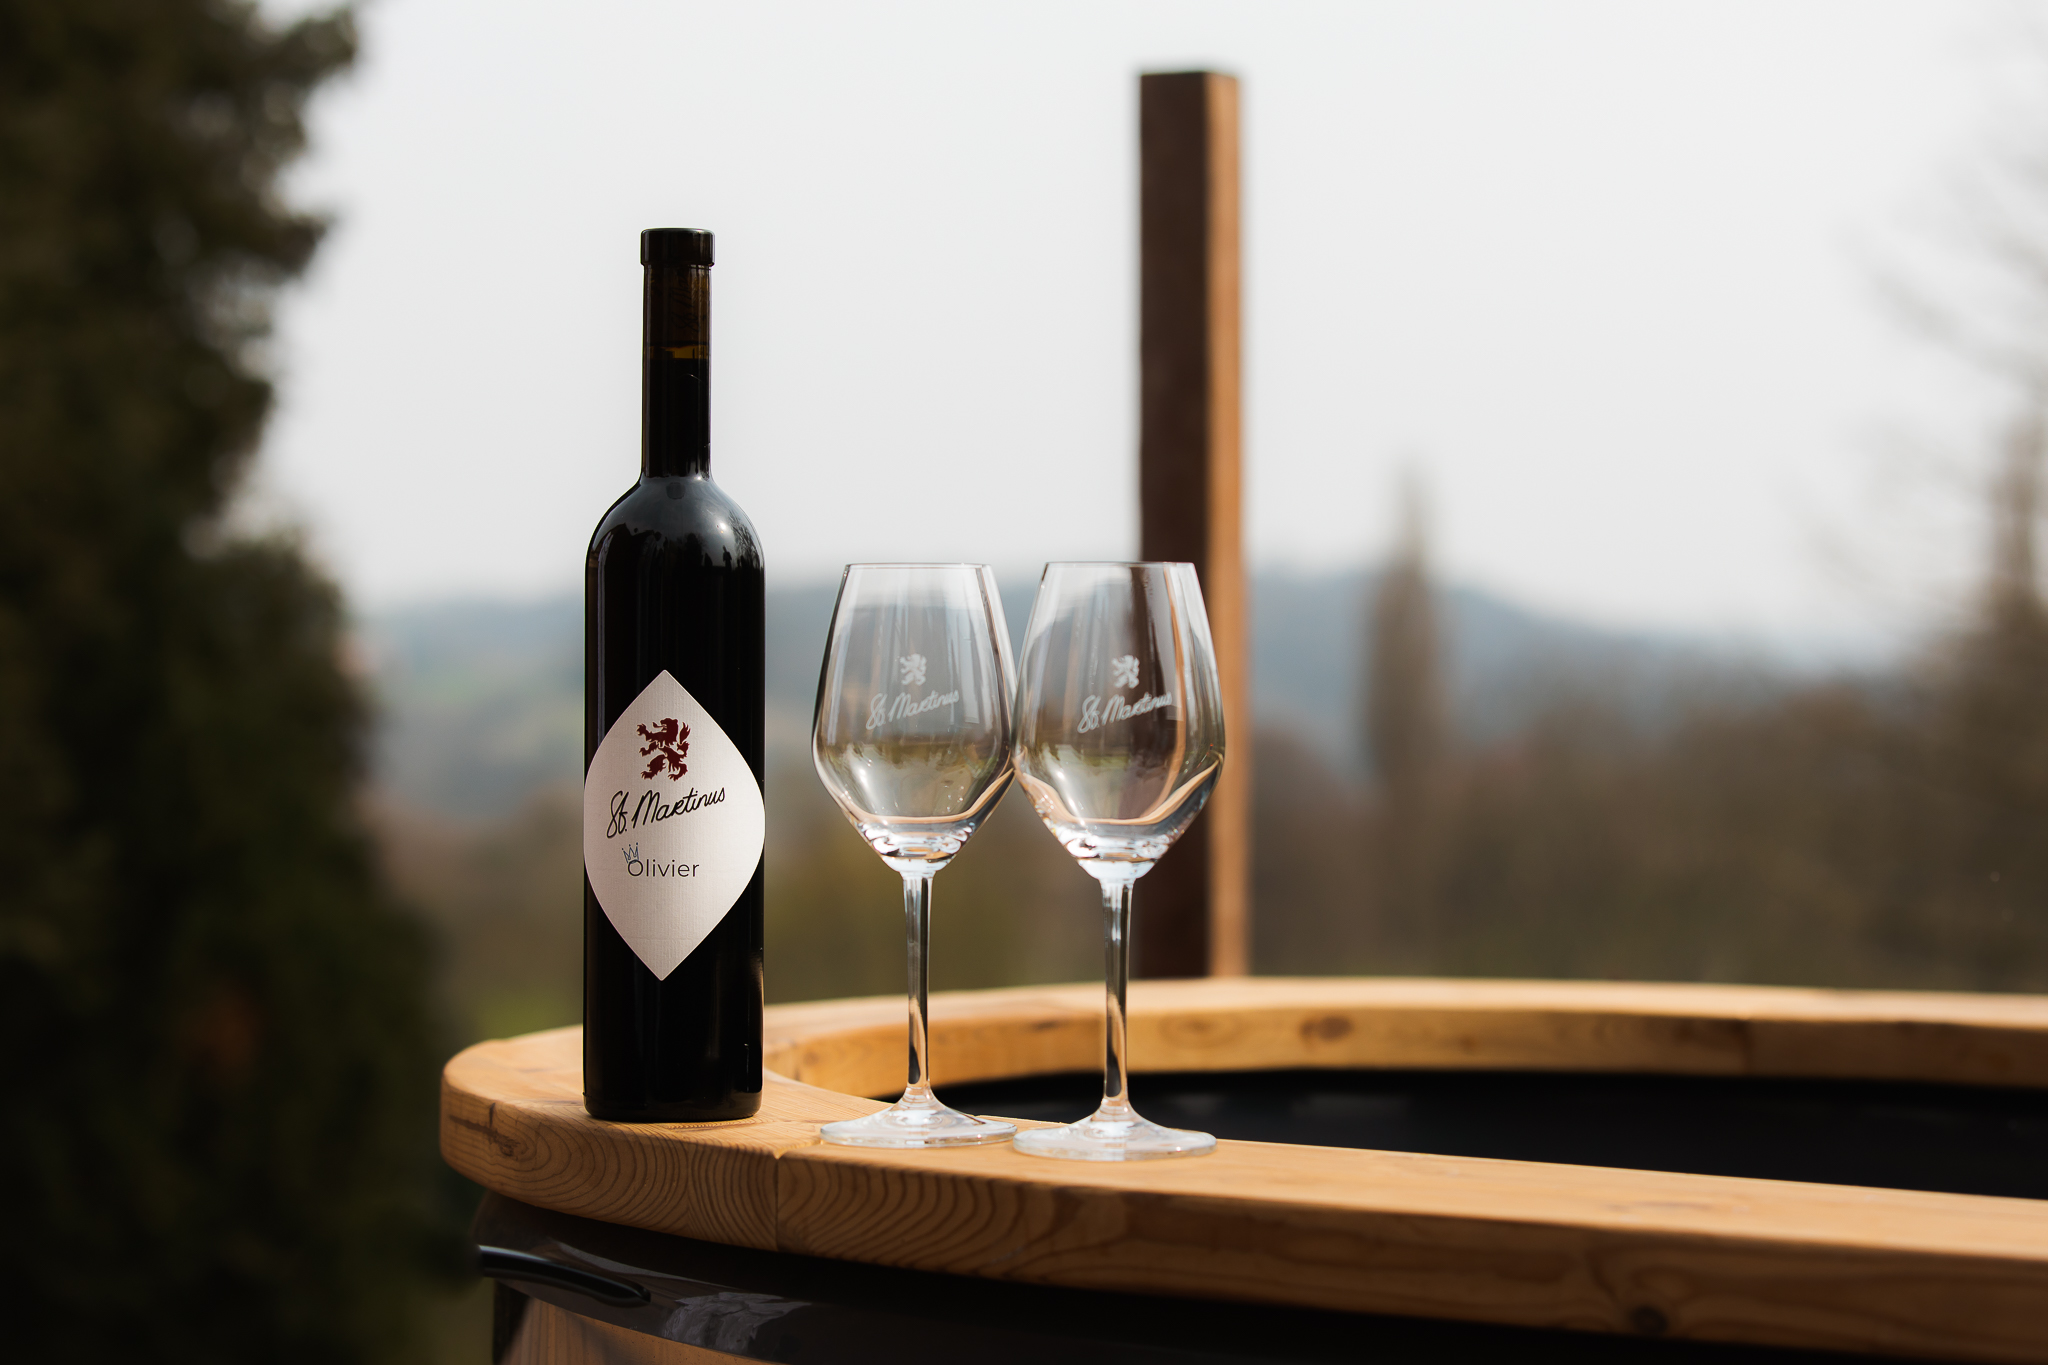 Fles rode wijn met twee wijnglazen op de rand van het wijnbad met uitzicht over de heuvels. 